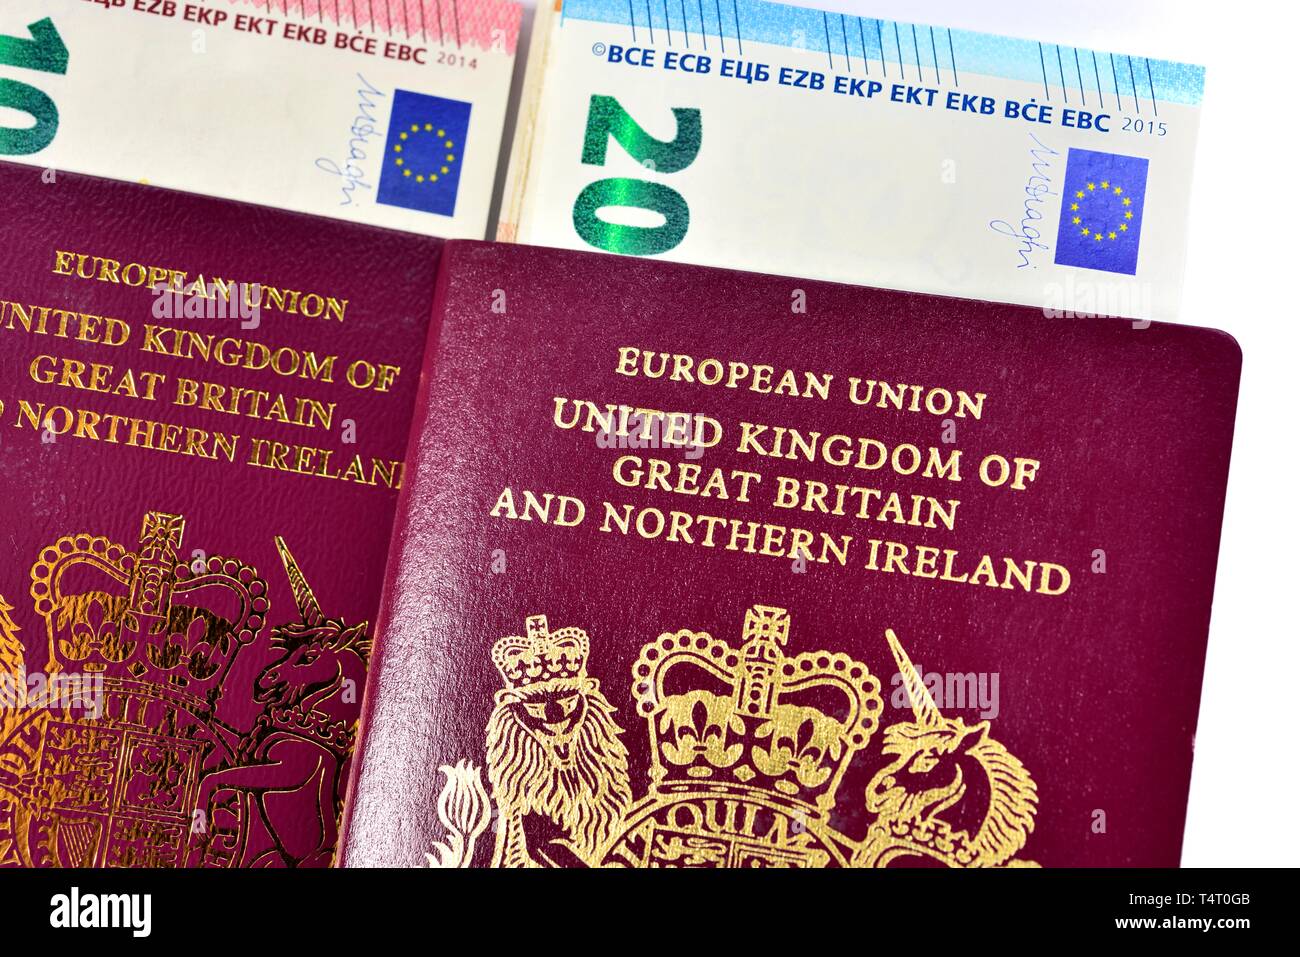 British passport,UK passport,European union, united kingdom of great britain, and northern ireland, Stock Photo